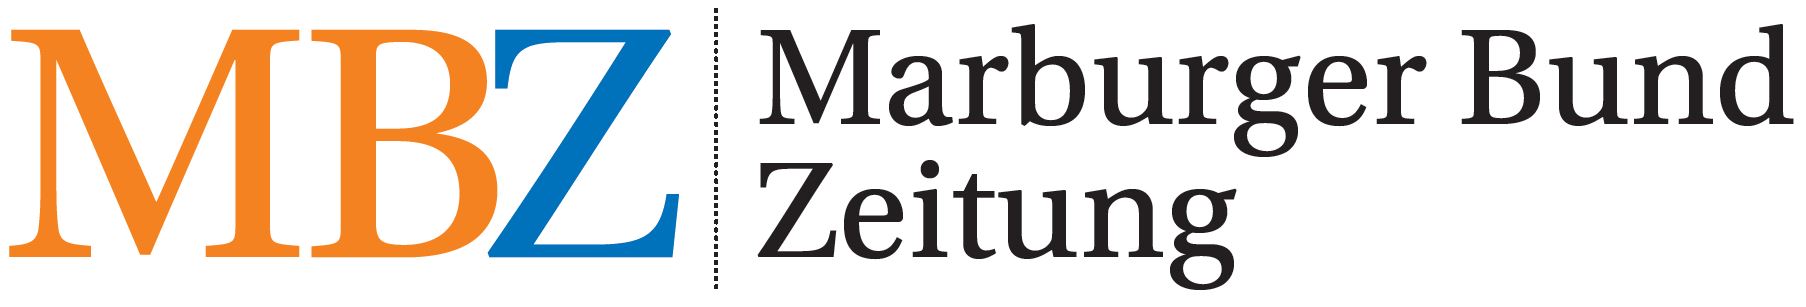 Marburger Bund Zeitung